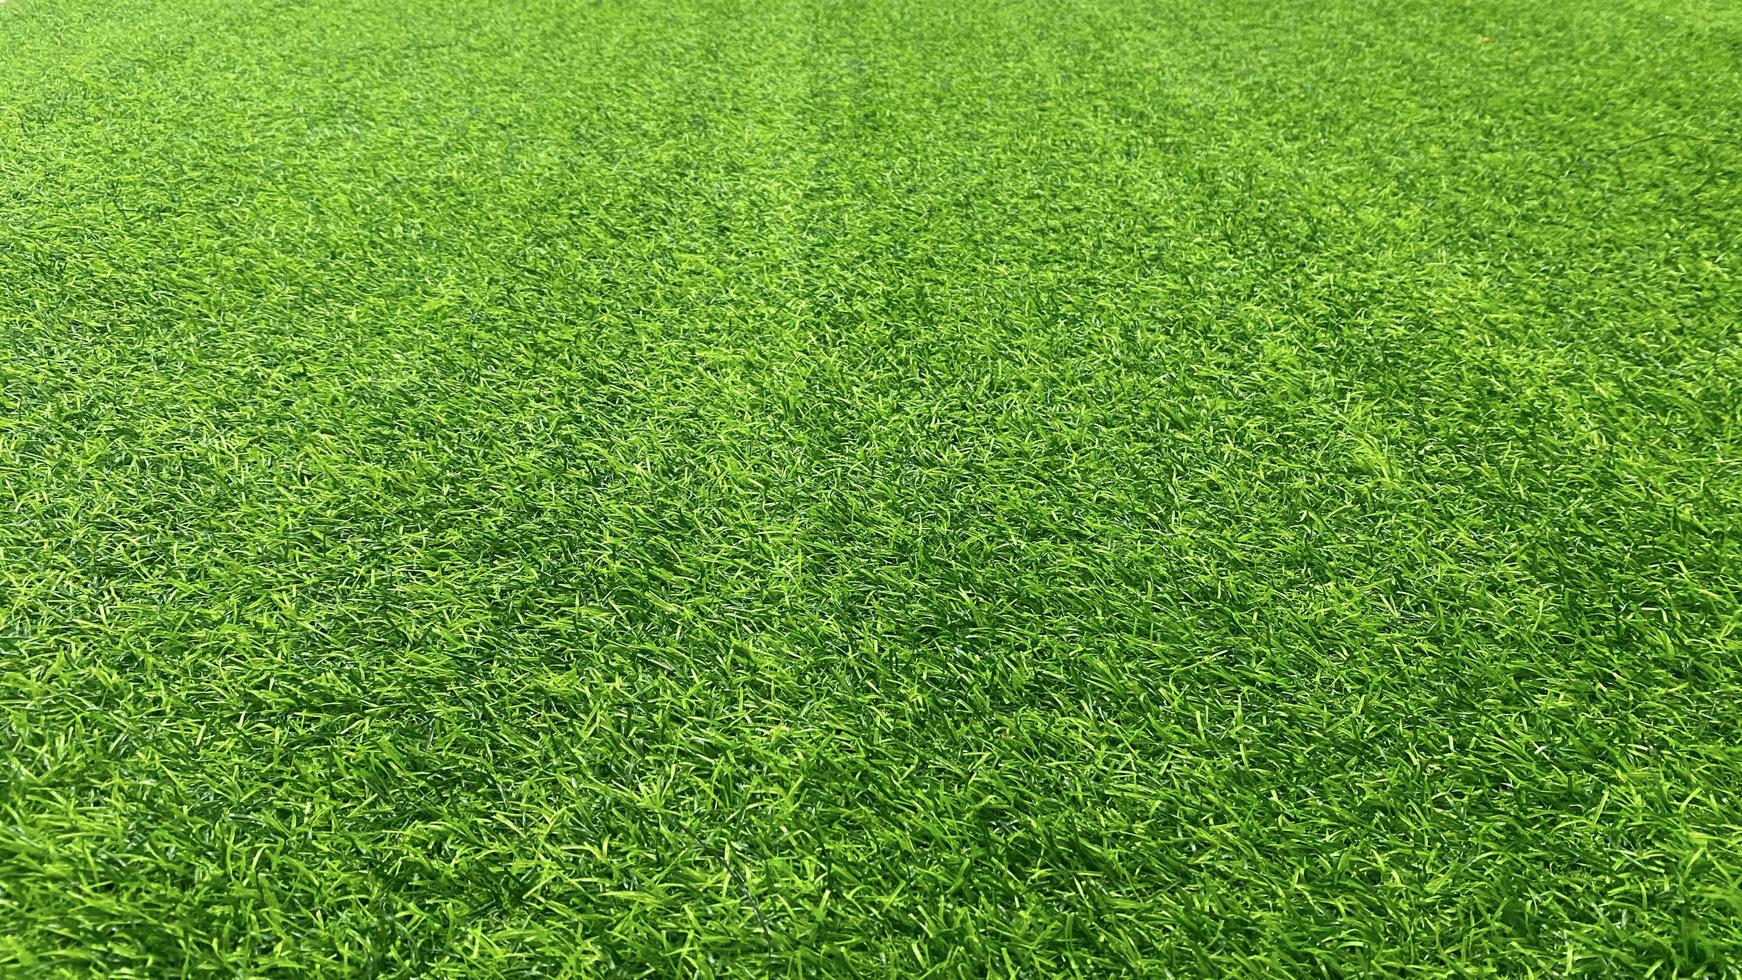 conceito de jardim de grama de fundo de textura de grama verde usado para fazer campo de futebol de fundo verde, golfe de grama, padrão de gramado verde texturizado background.wide angle. foto